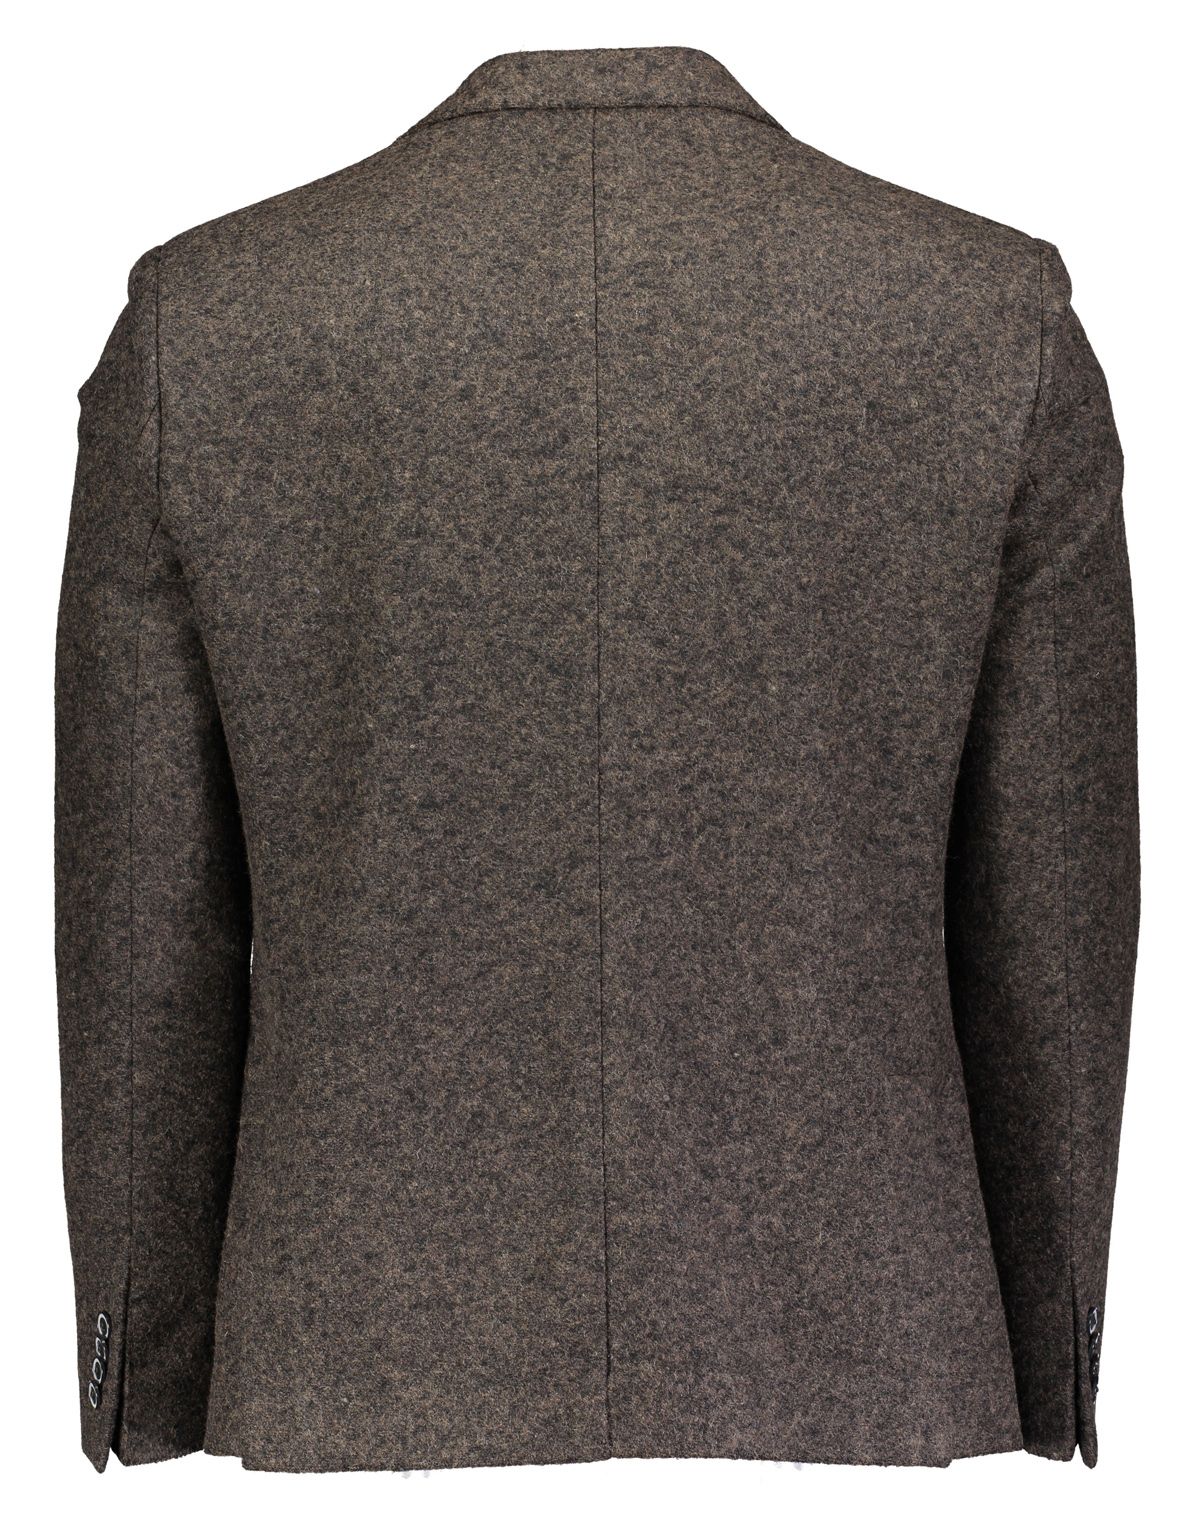 Пиджак мужской Roy Robson из трикотажной шерсти приталенный | купить в интернет-магазине Olymp-Men